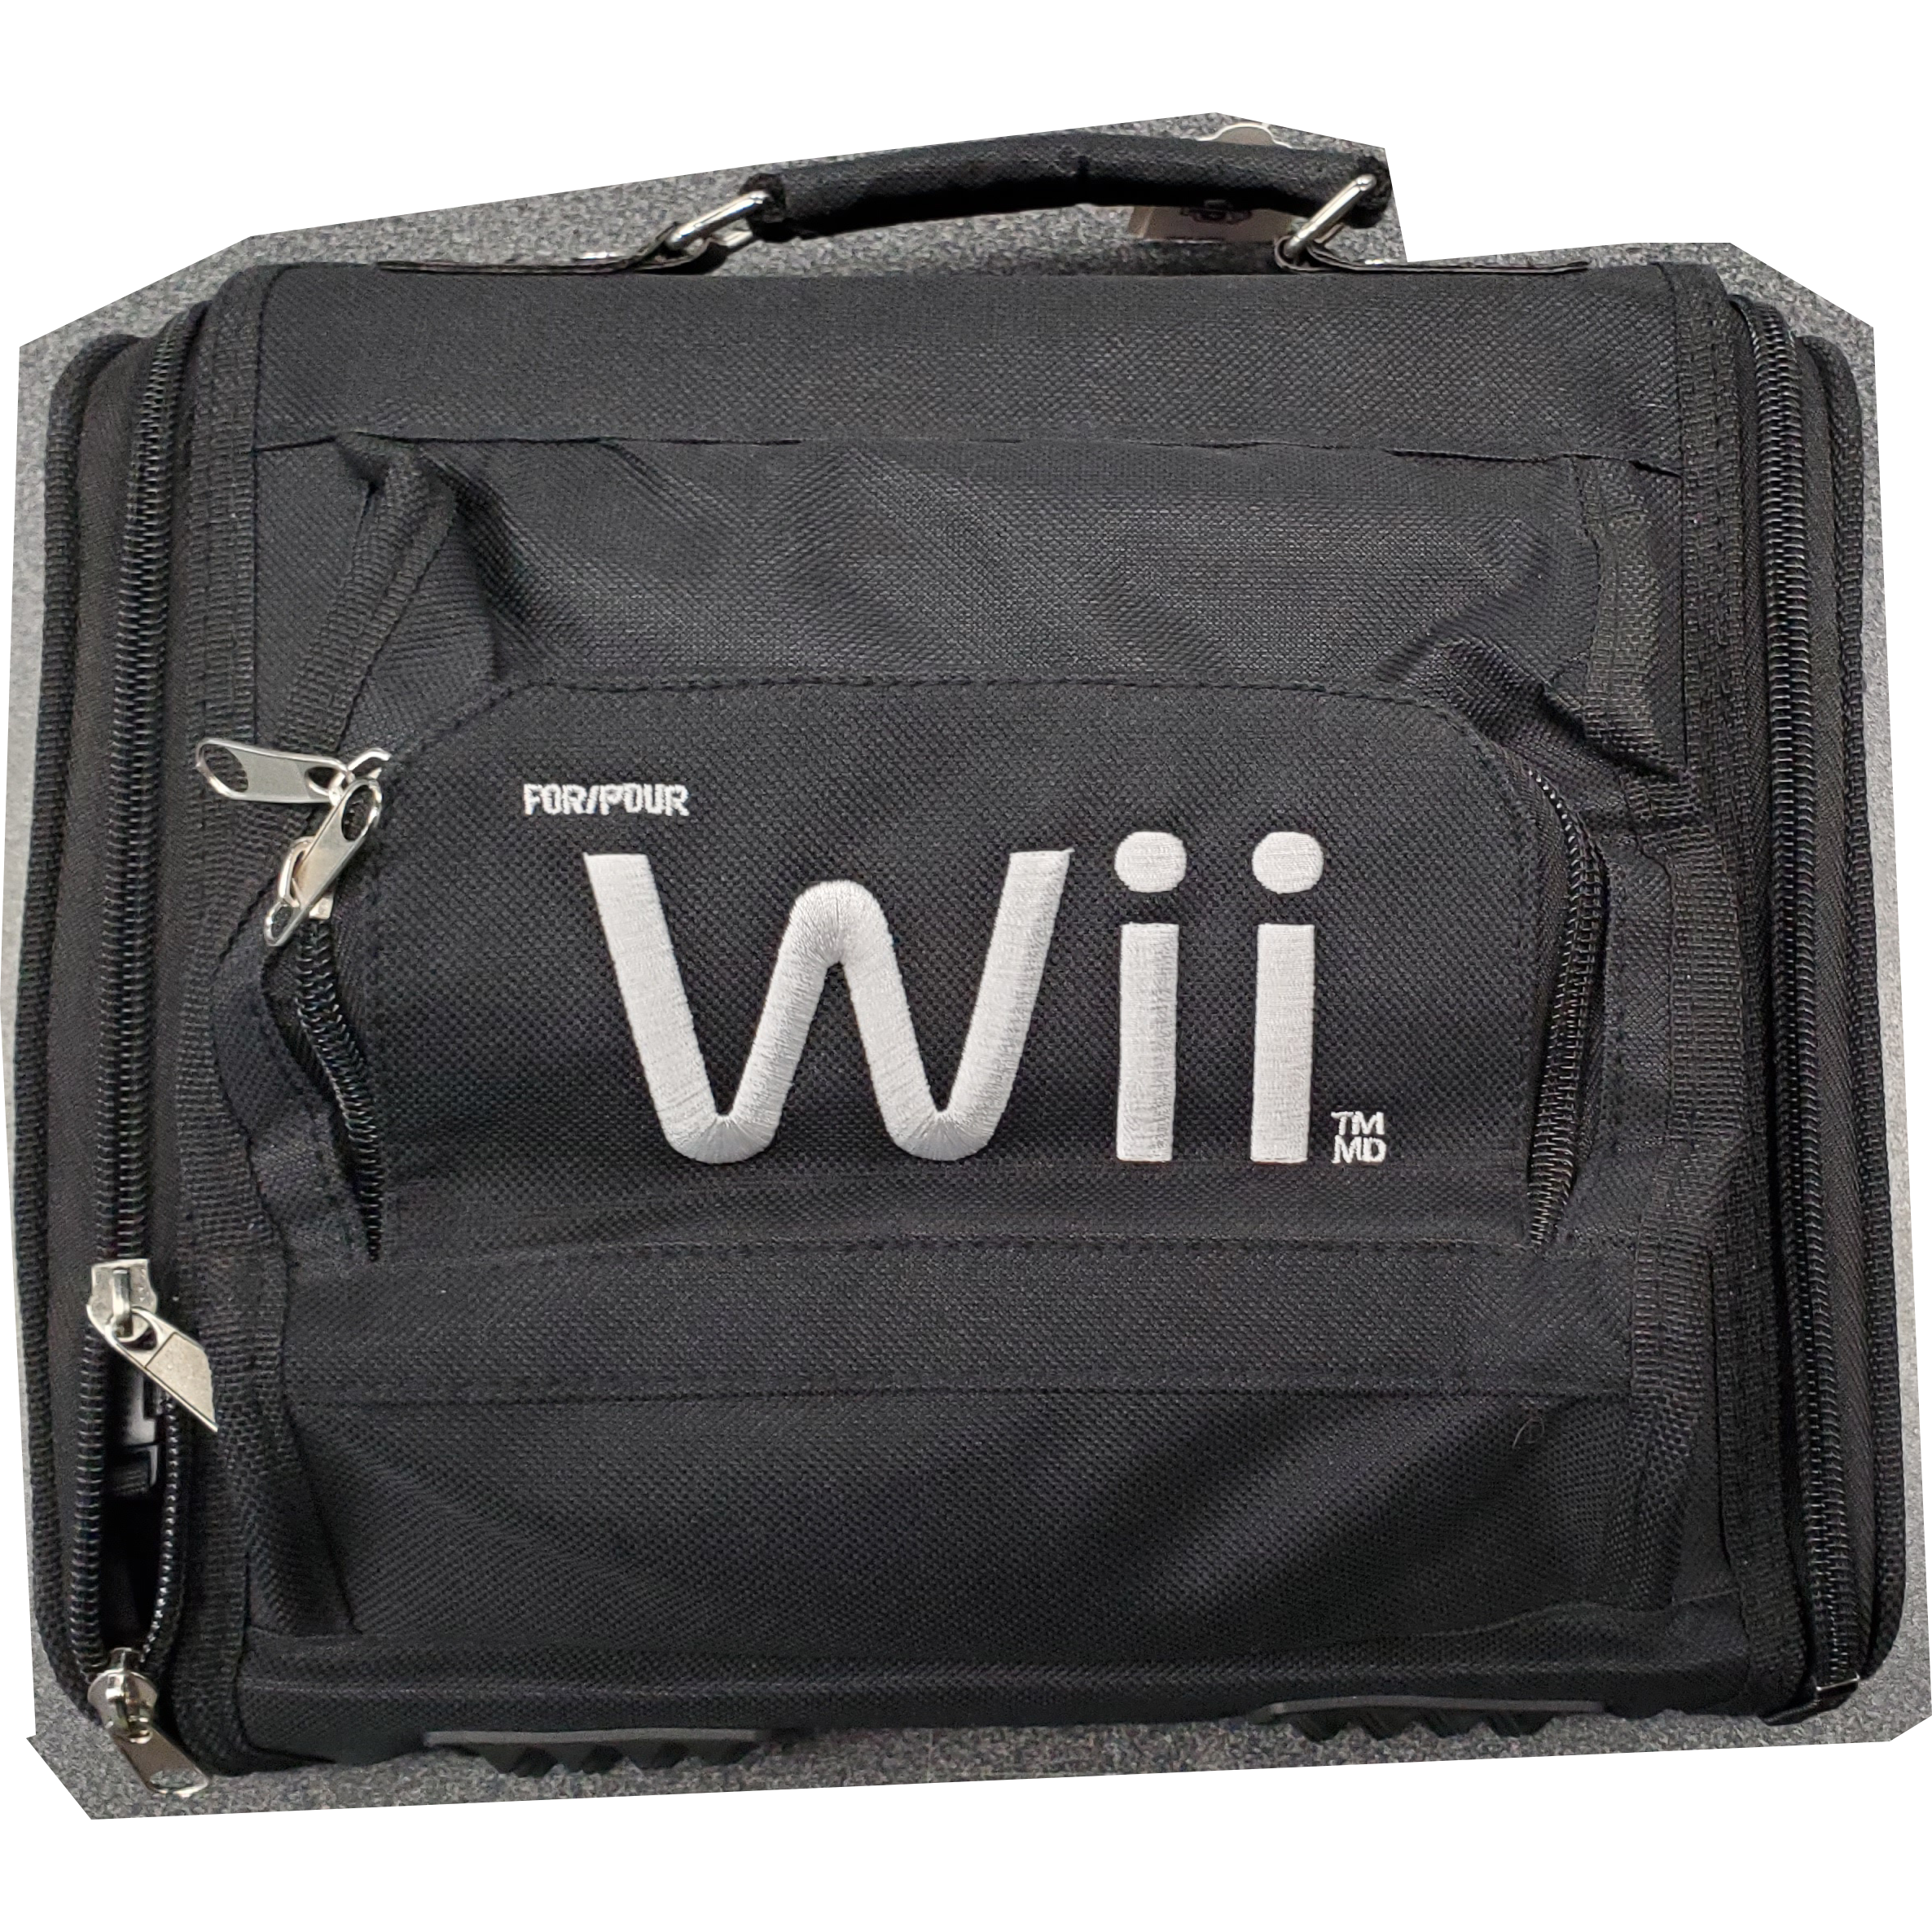 Étui de transport pour système Wii